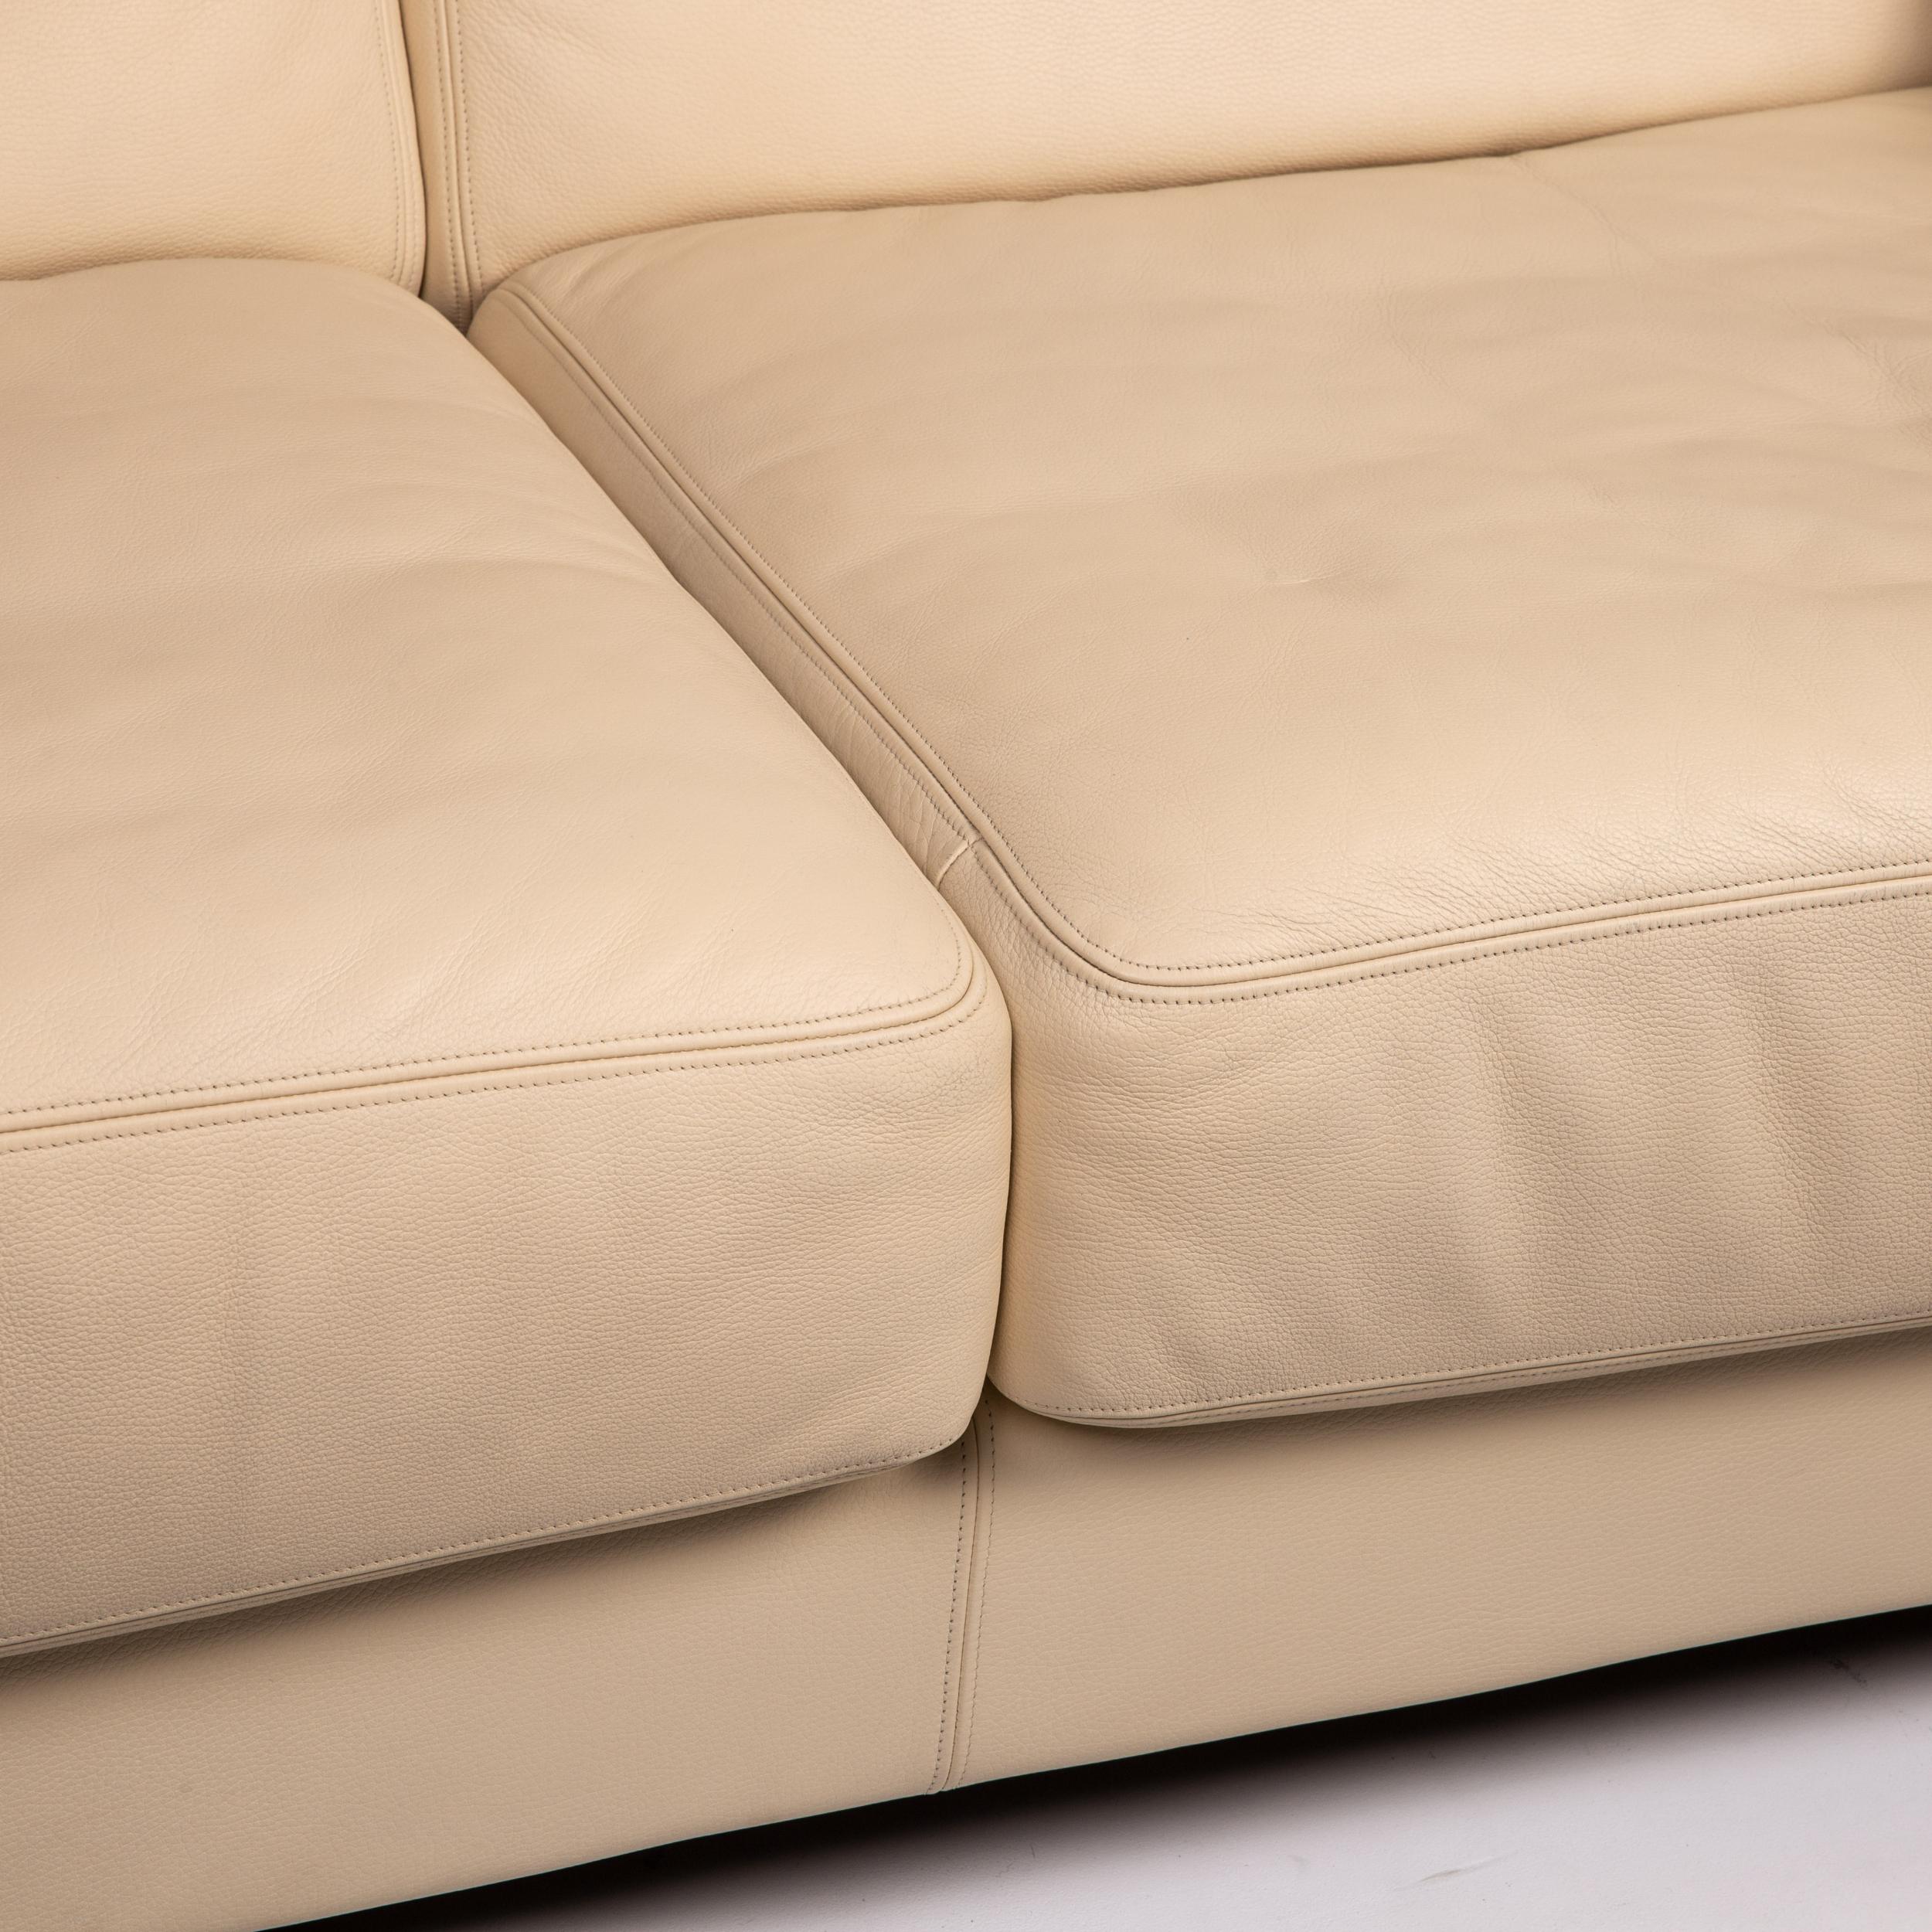 beige leather sofas